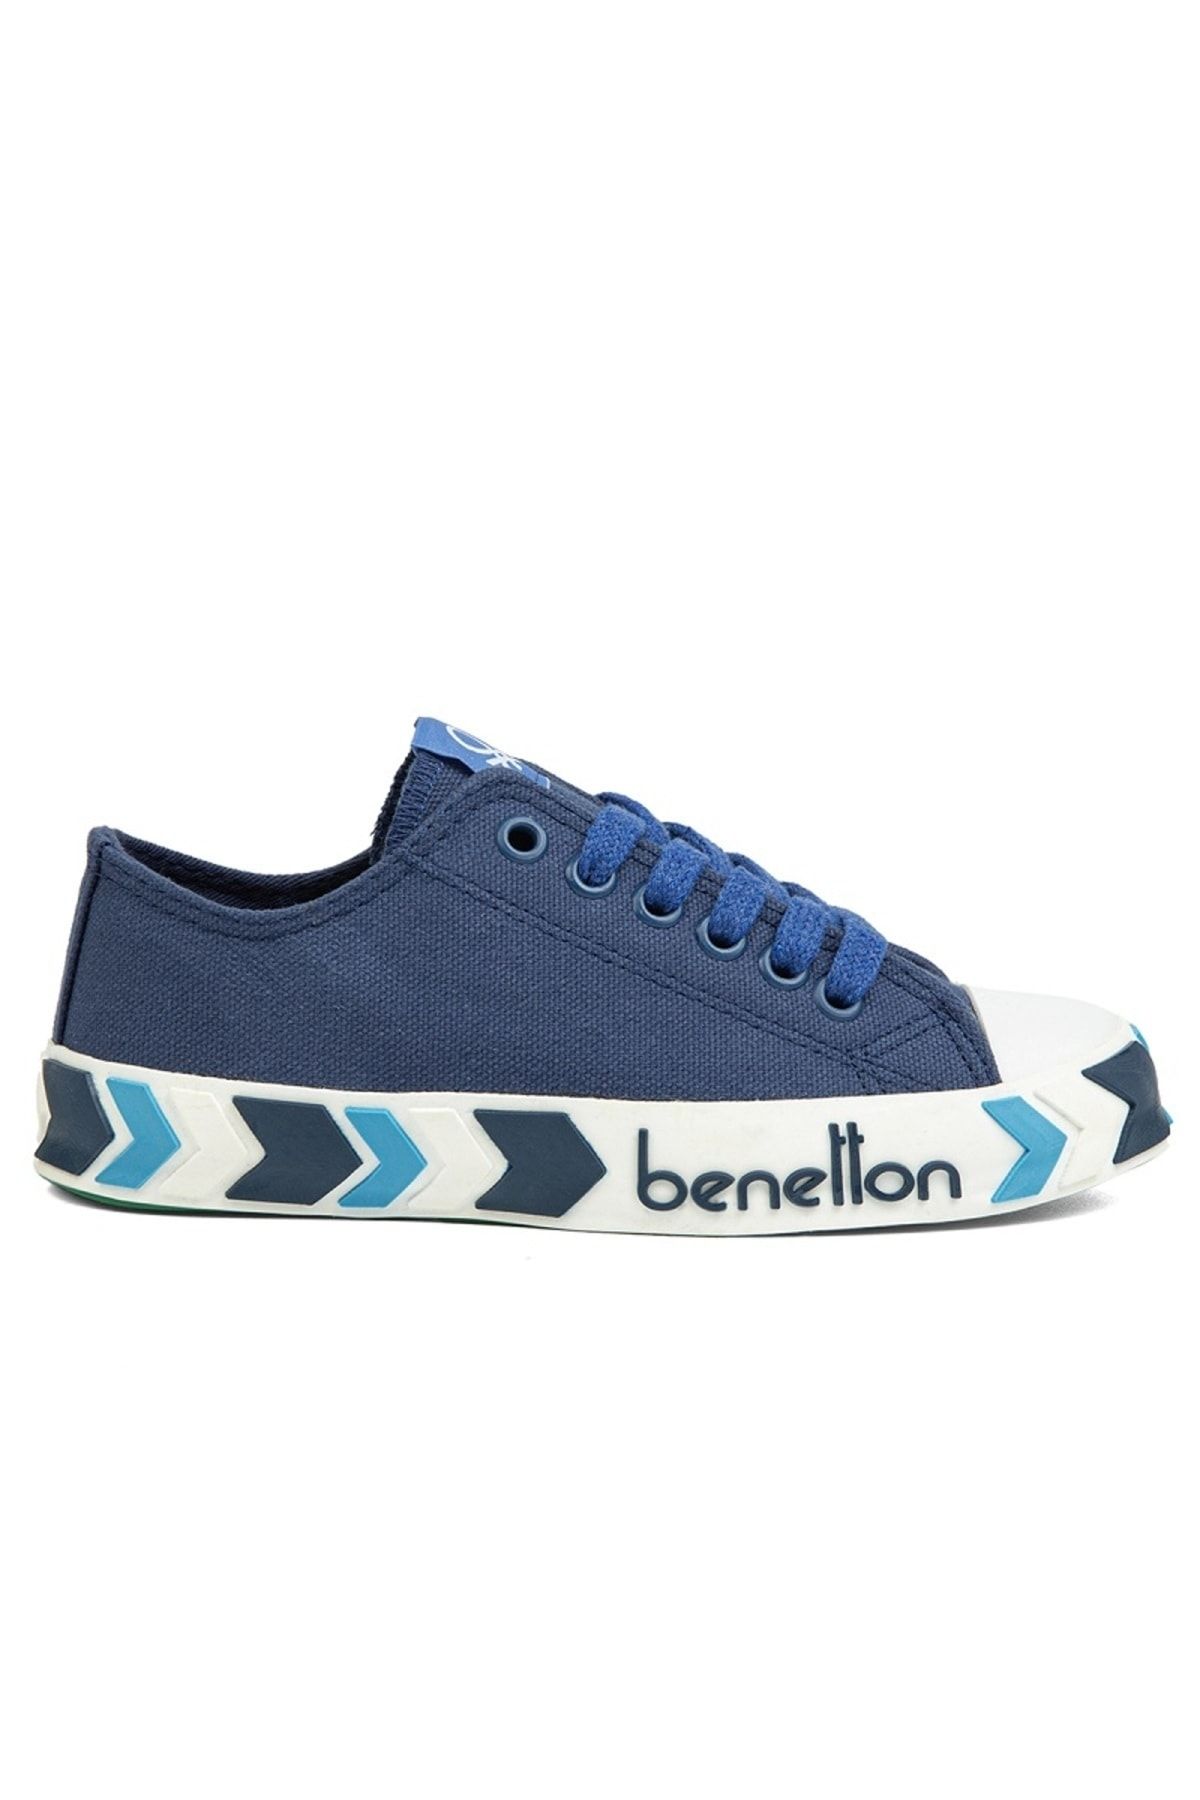 Benetton ® | BN-90620-Lacivert - Kadın Spor Ayakkabı